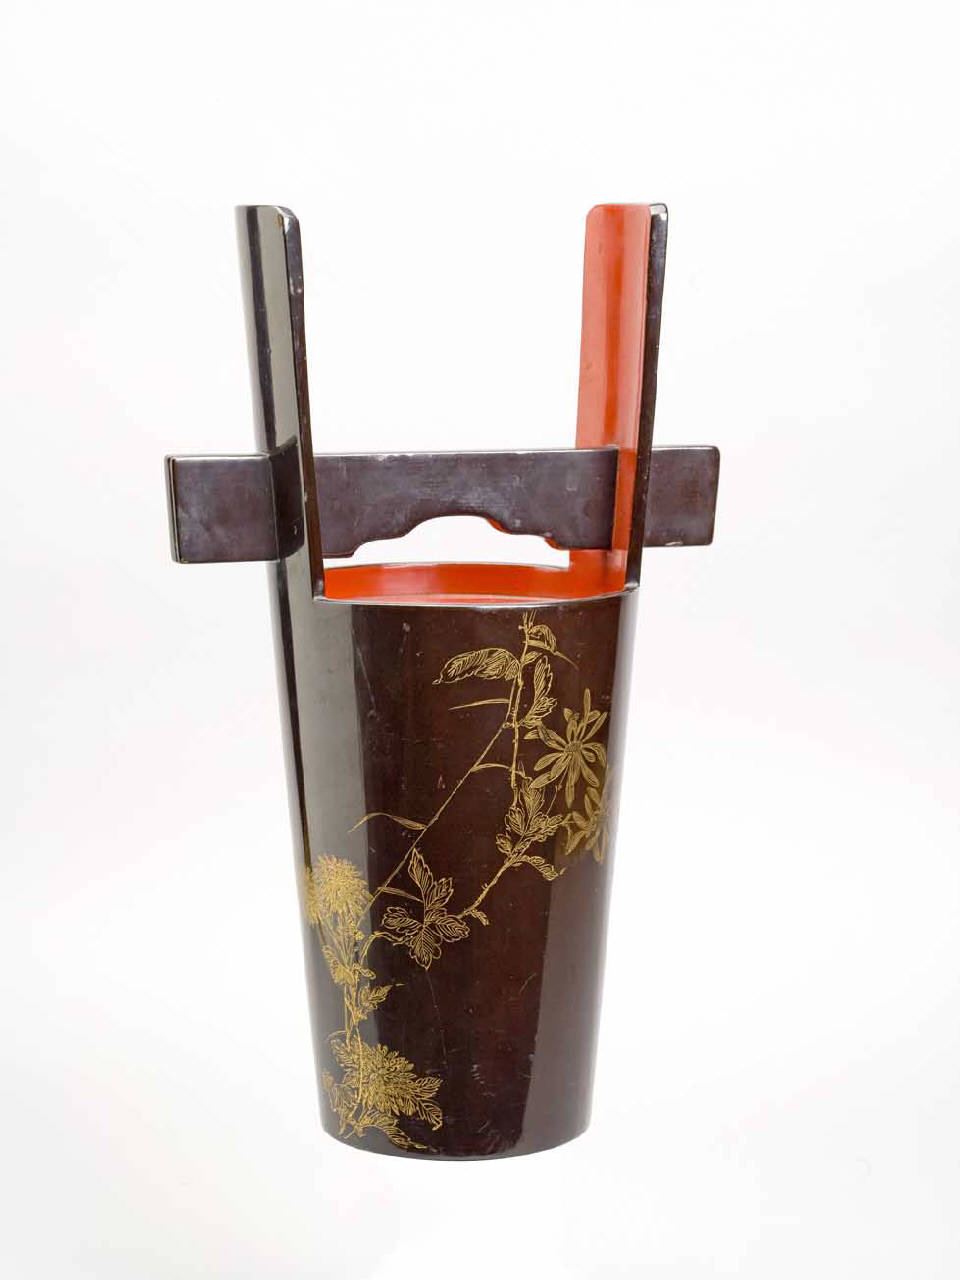 rami fioriti (contenitore per sake) - manifattura giapponese (sec. XIX)